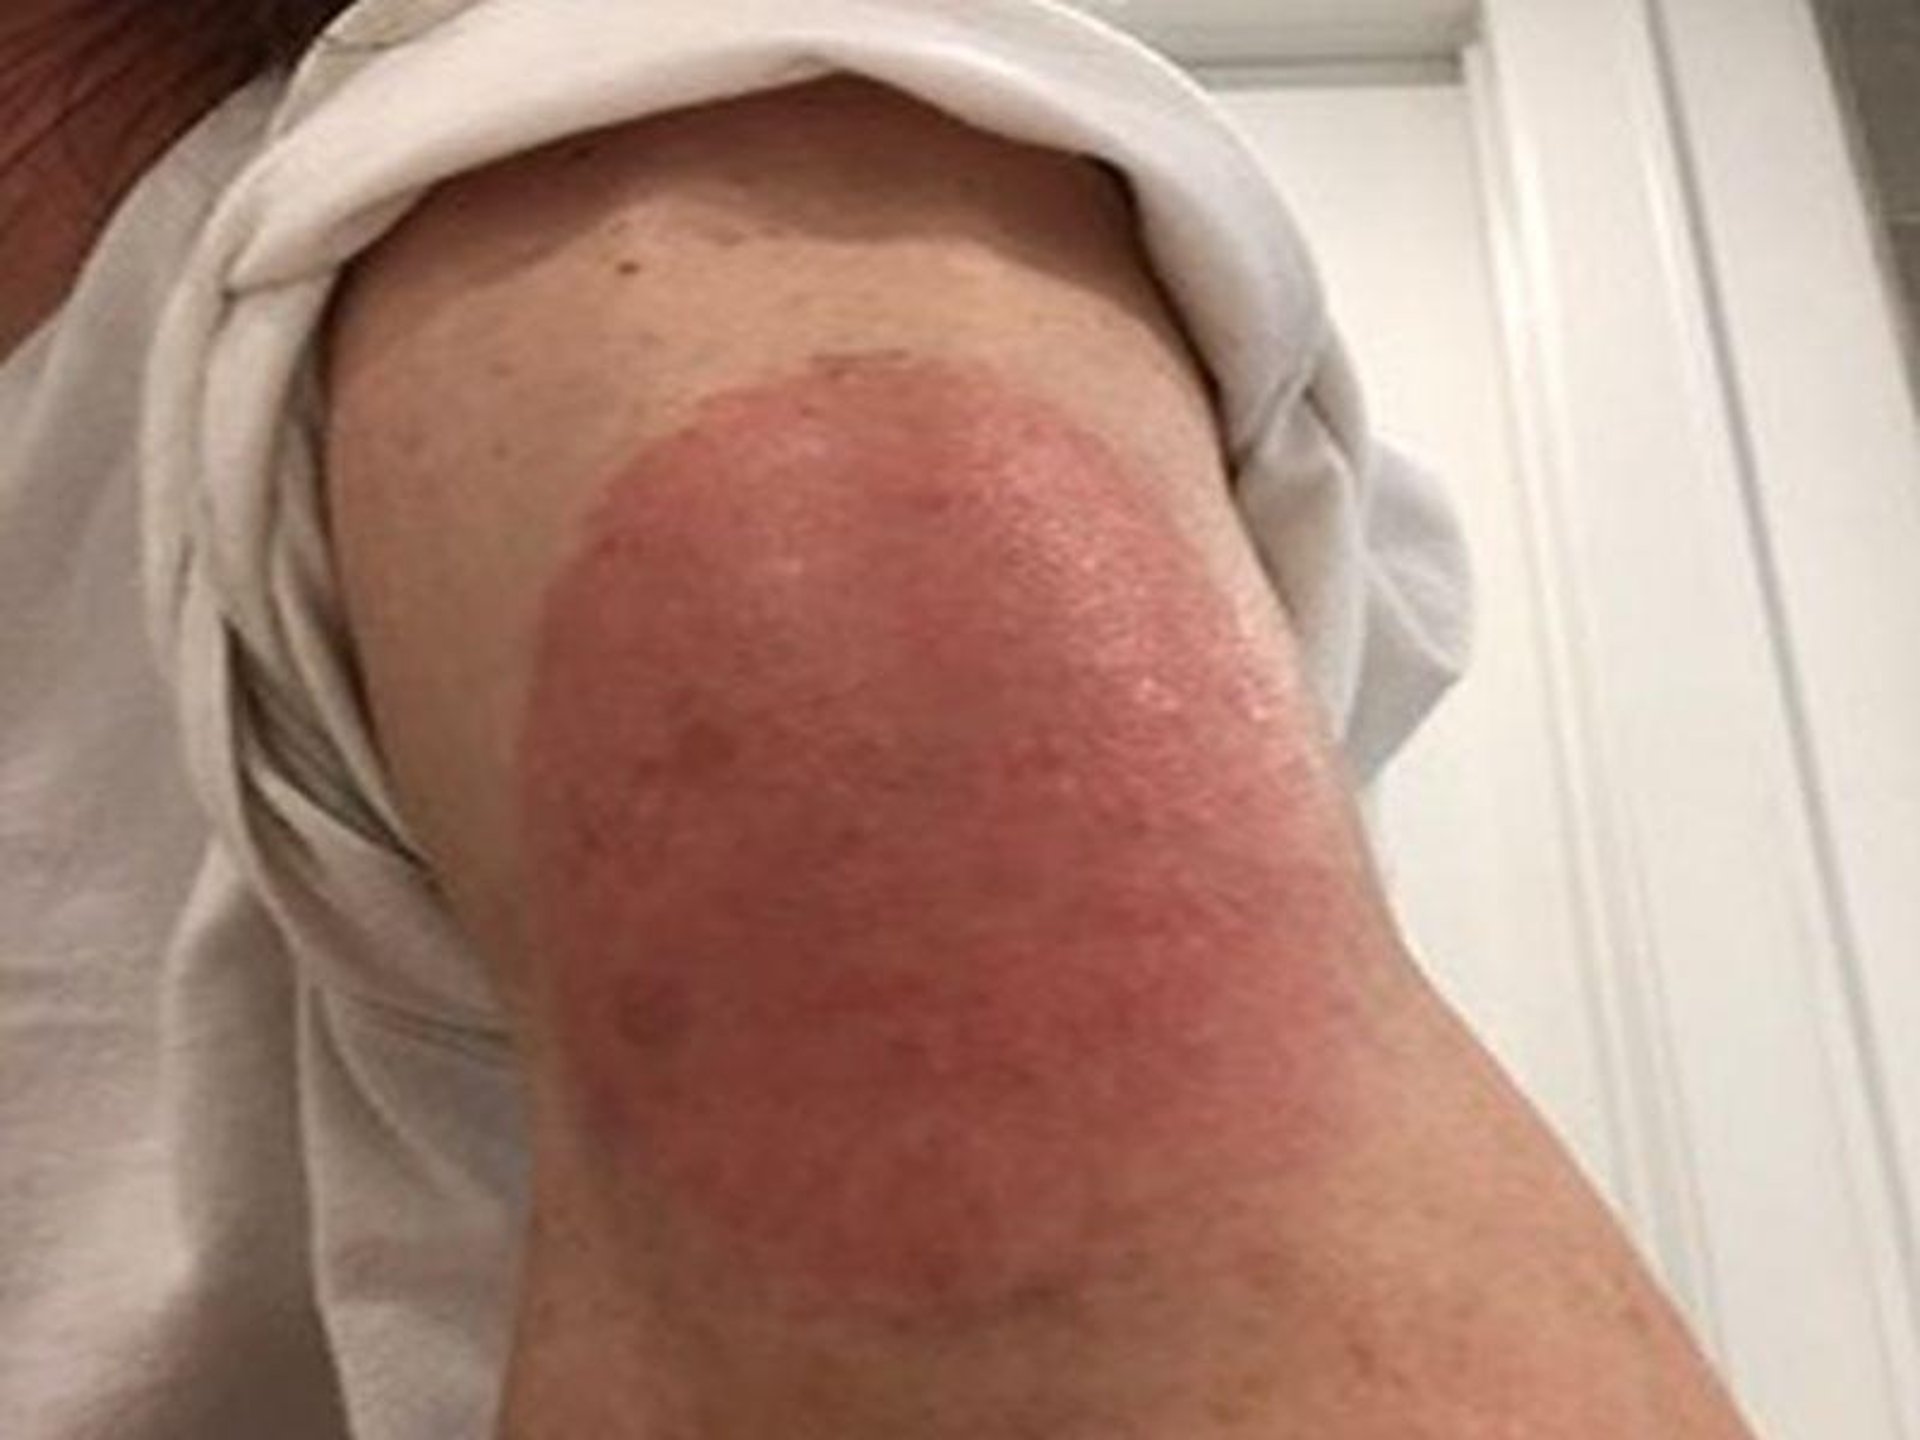 Foto de noticia: Puede haber sarpullido después de la vacuna contra el COVID, pero los dermatólogos dicen 